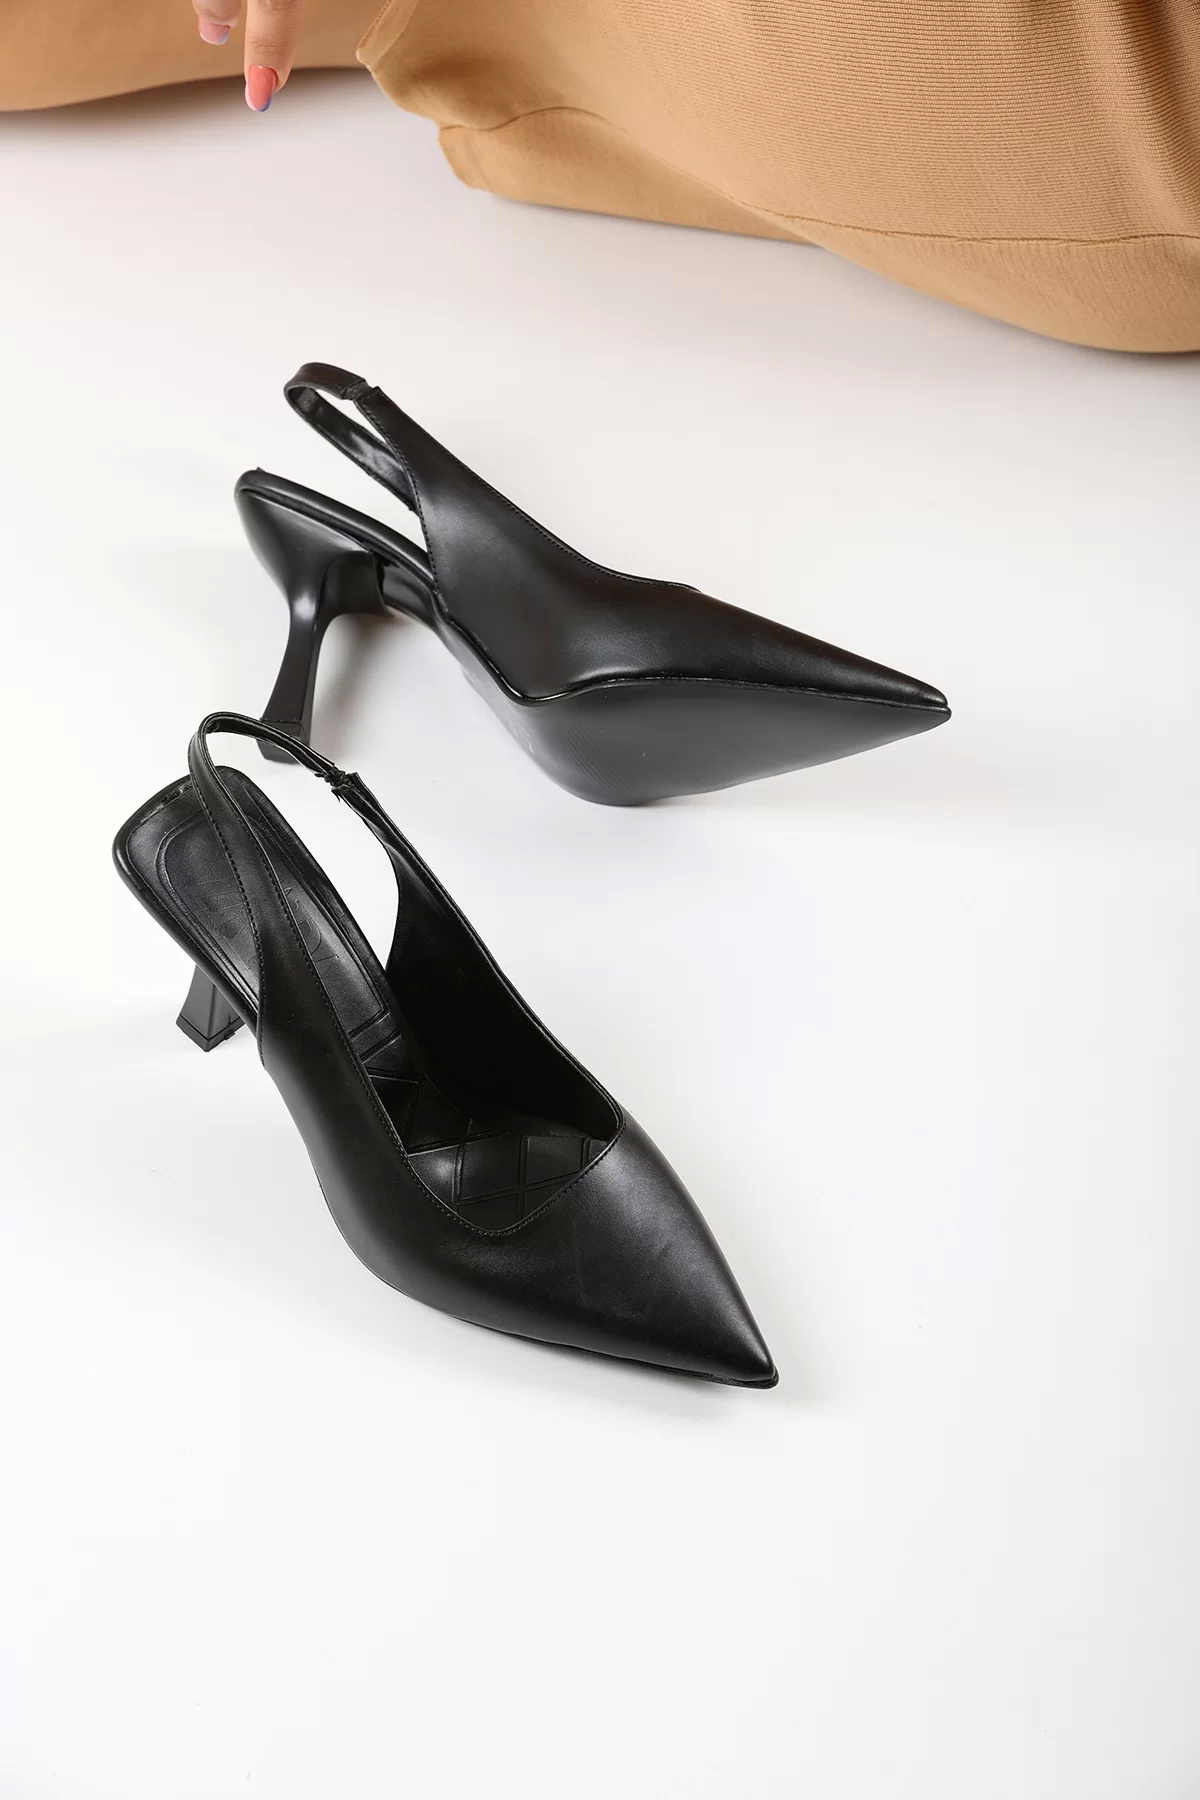 Kadın Zr Model Klasik Topuklu Ayakkabı 5180